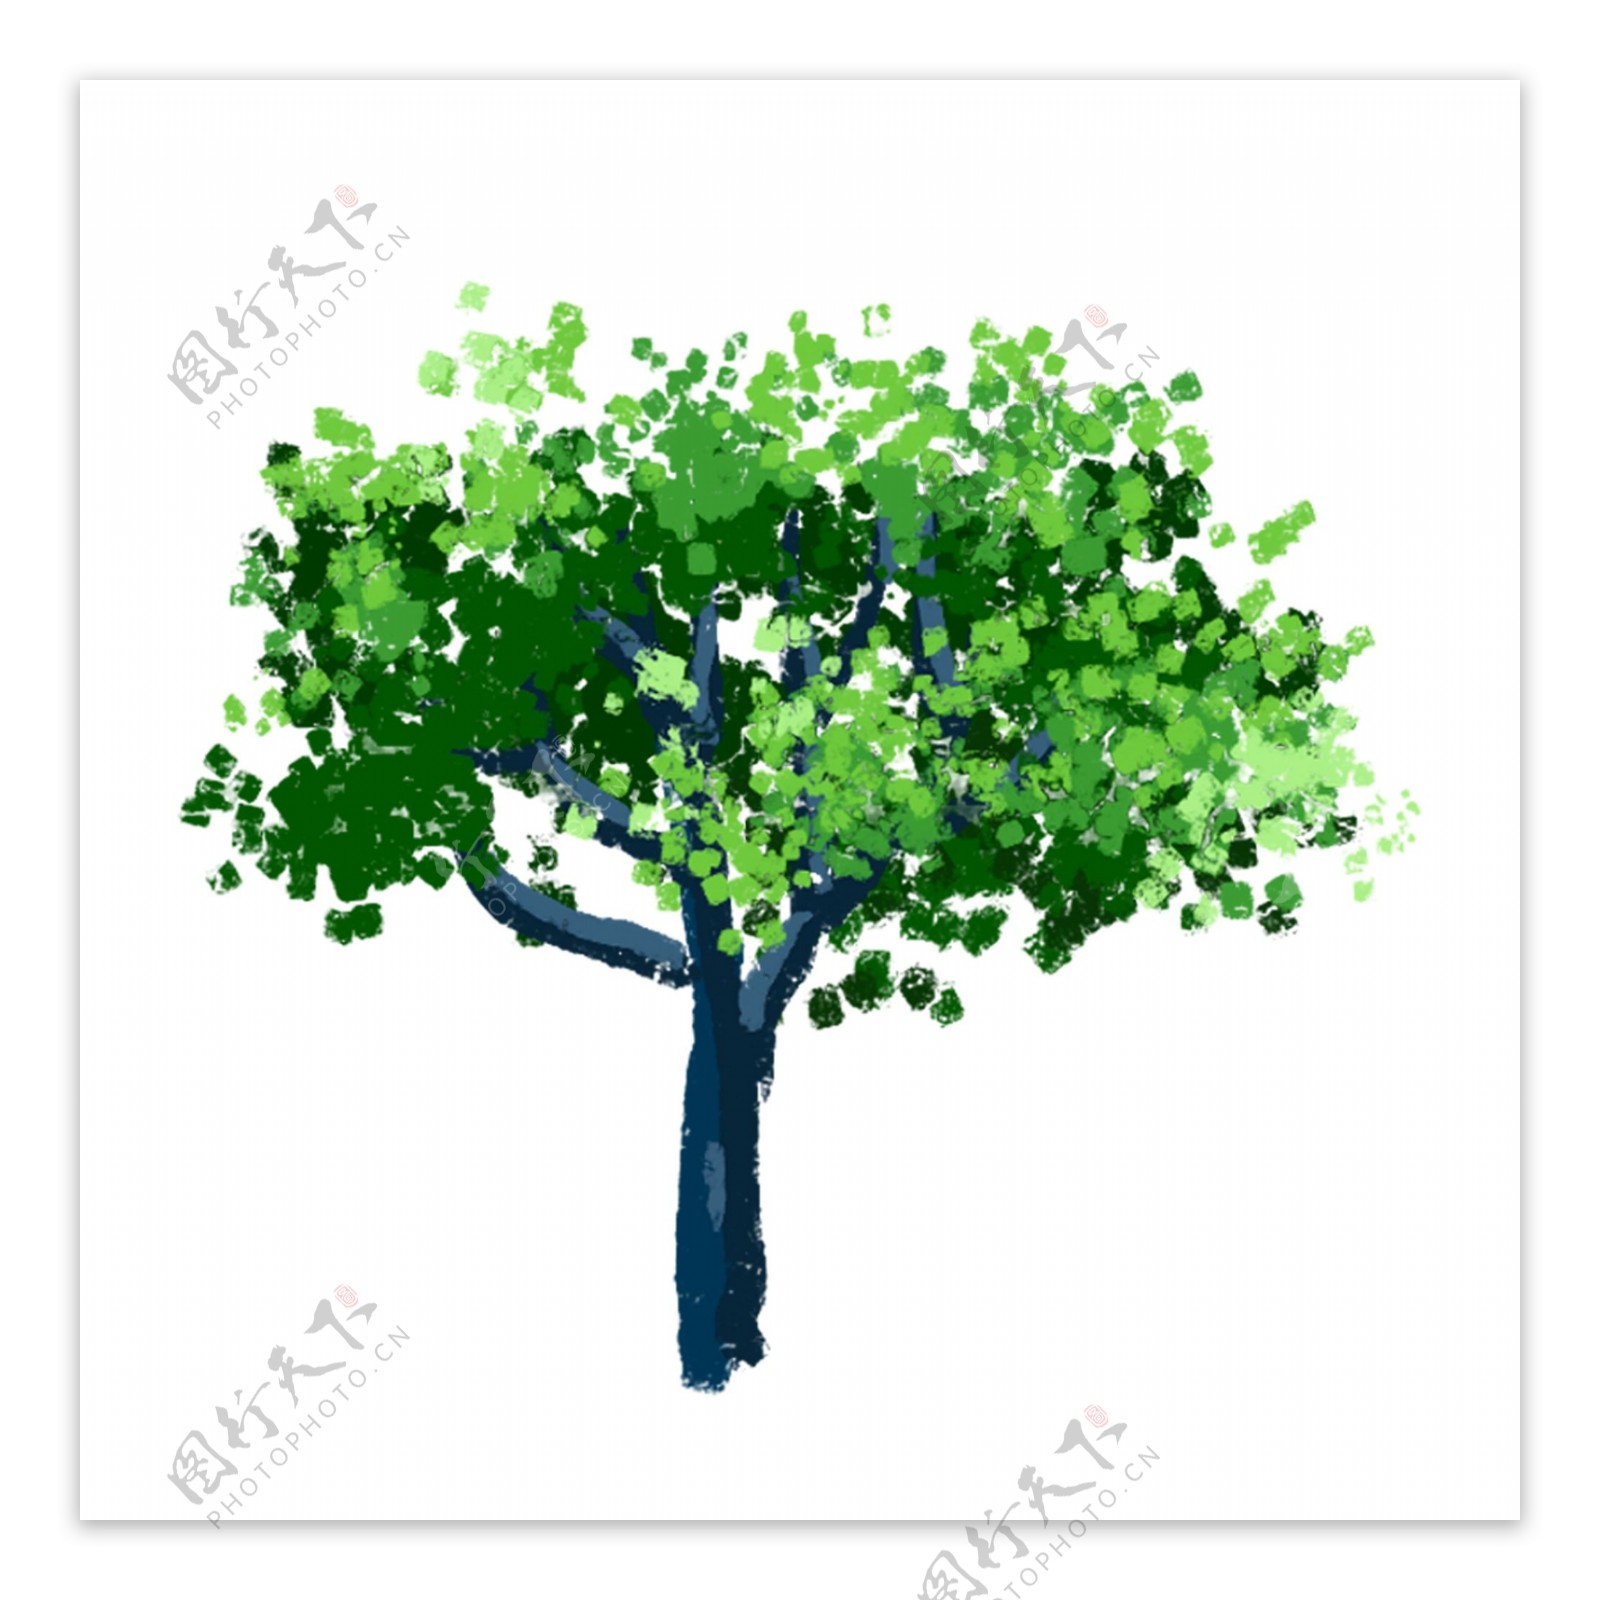 一个精美漂亮的卡通手绘绿色大树免扣素材